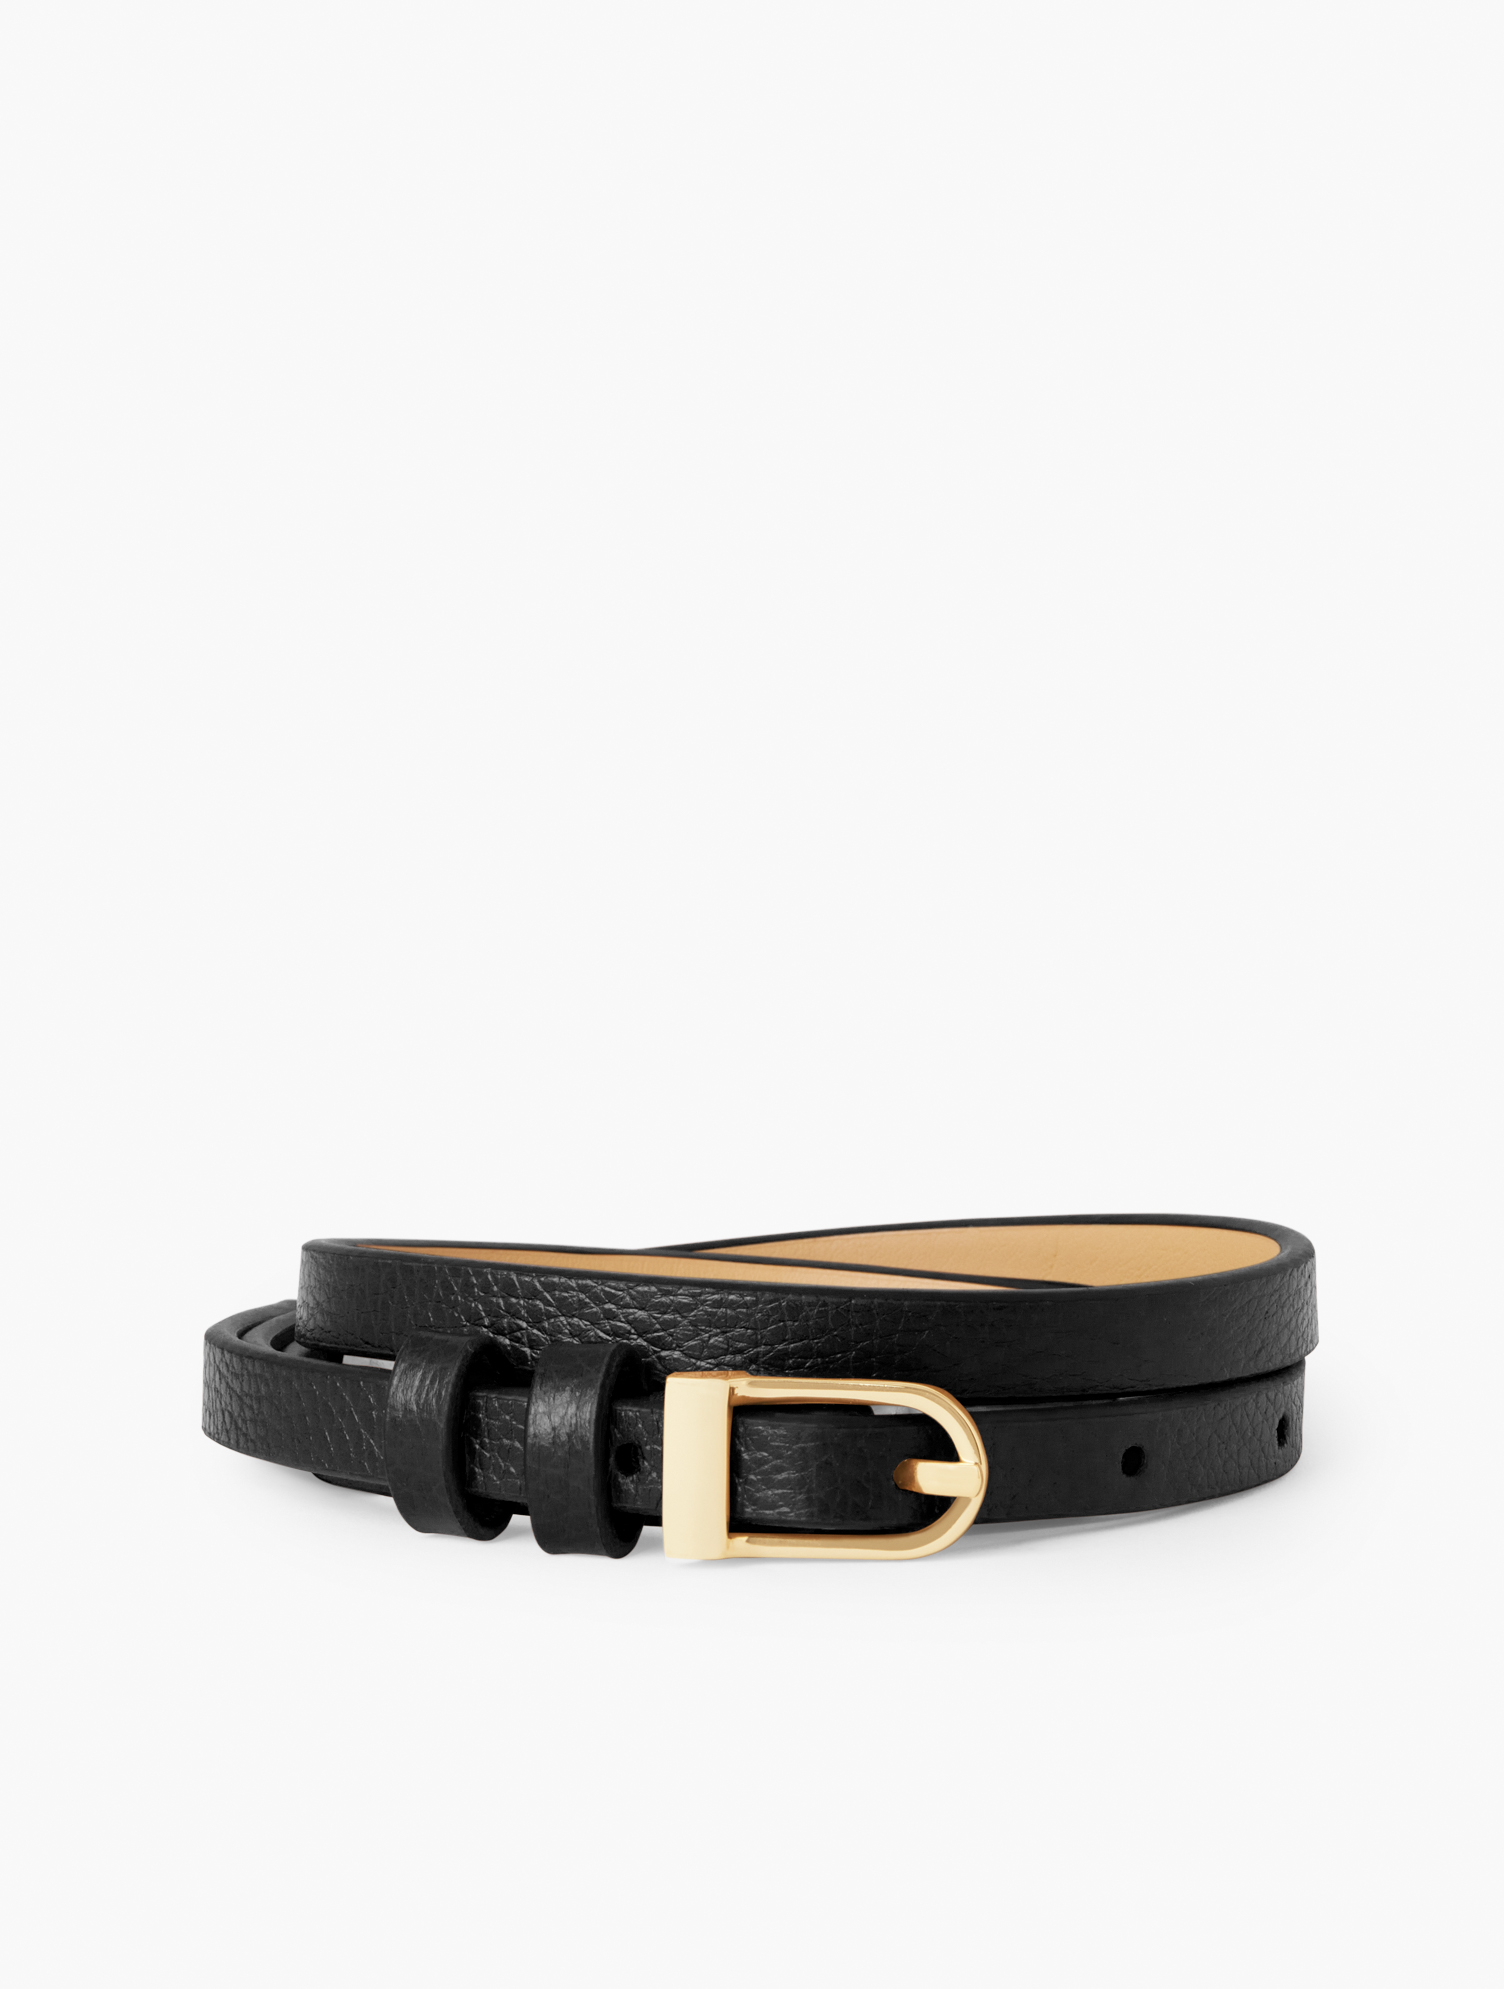 Talbots Slim Leather Belt - Black - Medium